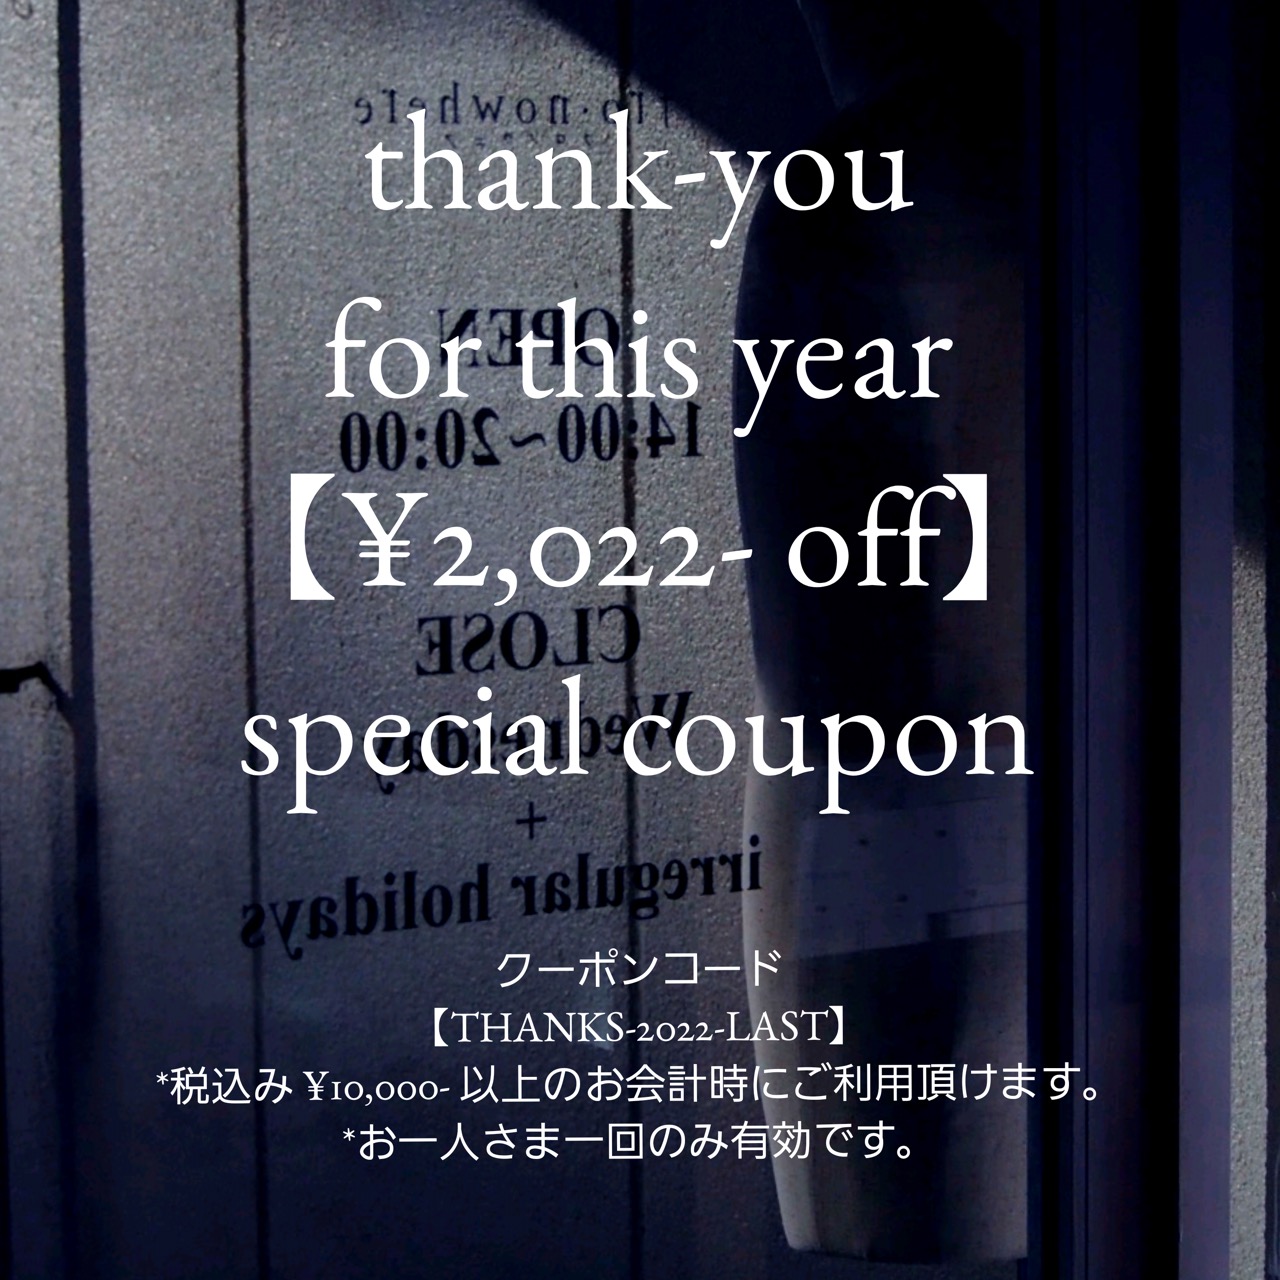 【感謝を込めて】special coupon のご案内。